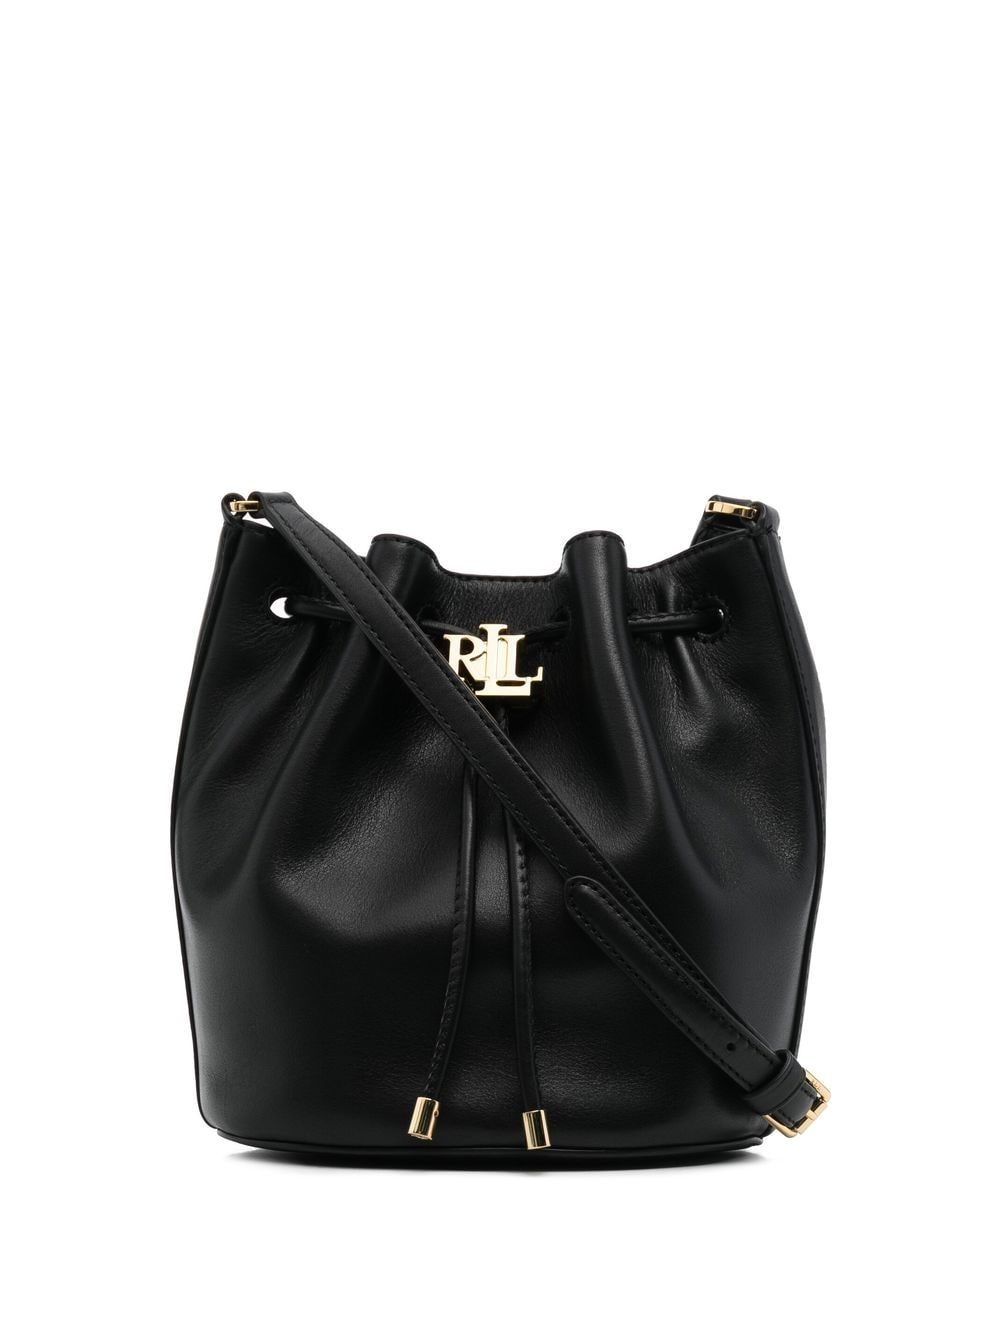 Lauren Ralph Lauren Andie Bucket Bag In Black